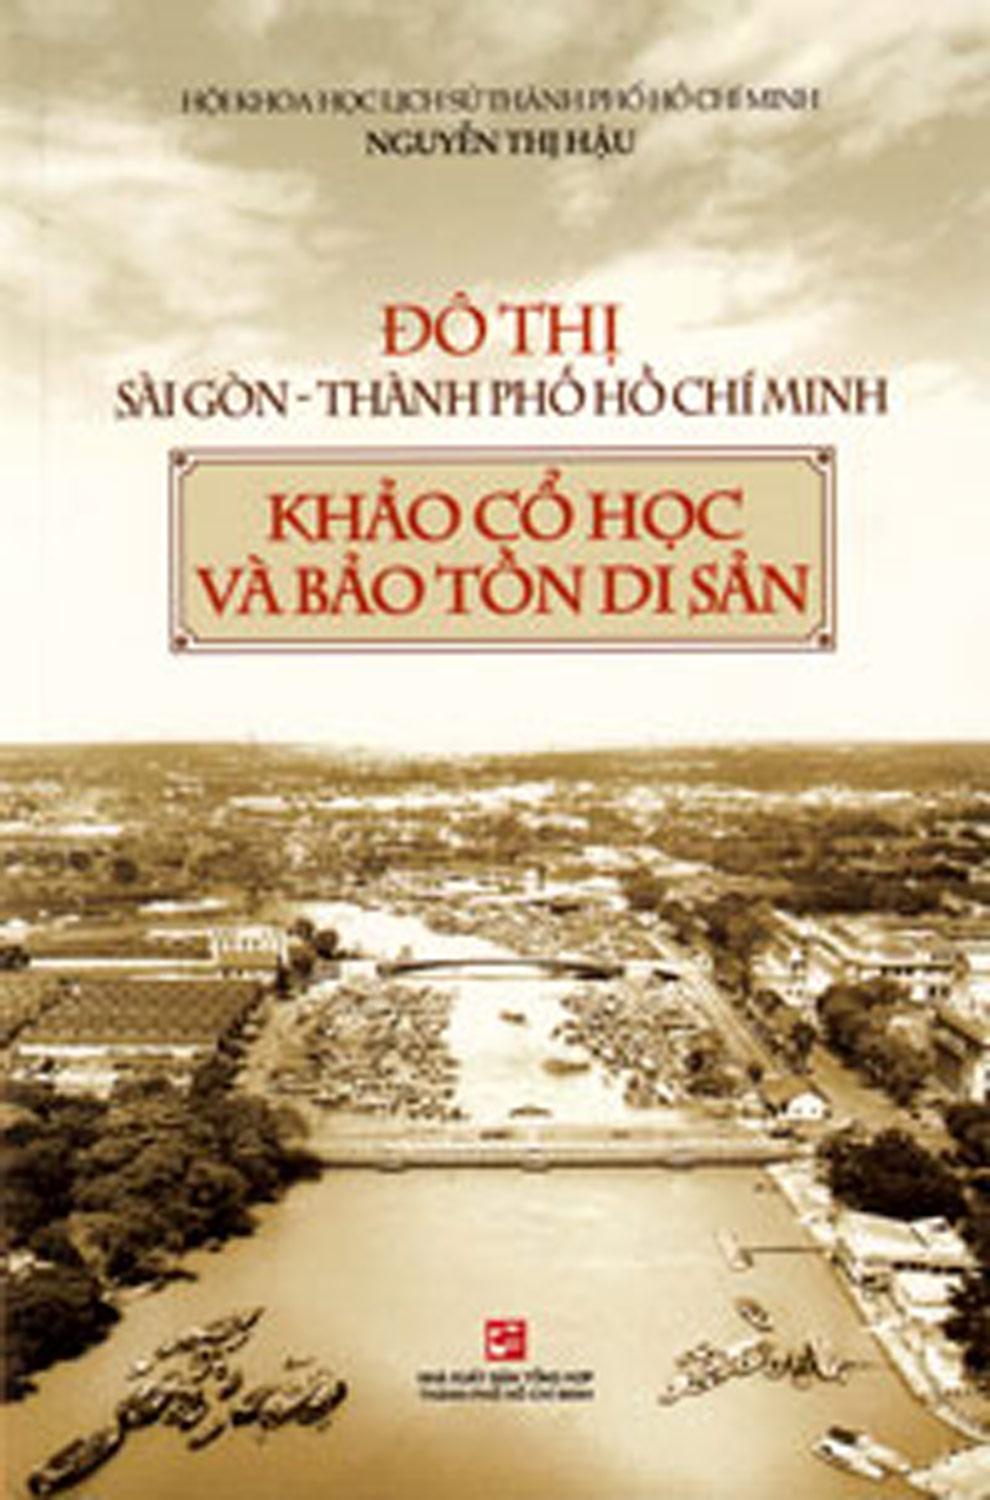 Đô Thị Sài Gòn - Thành Phố Hồ Chí Minh - Khảo Cổ Học Và Bảo Tồn Di Sản